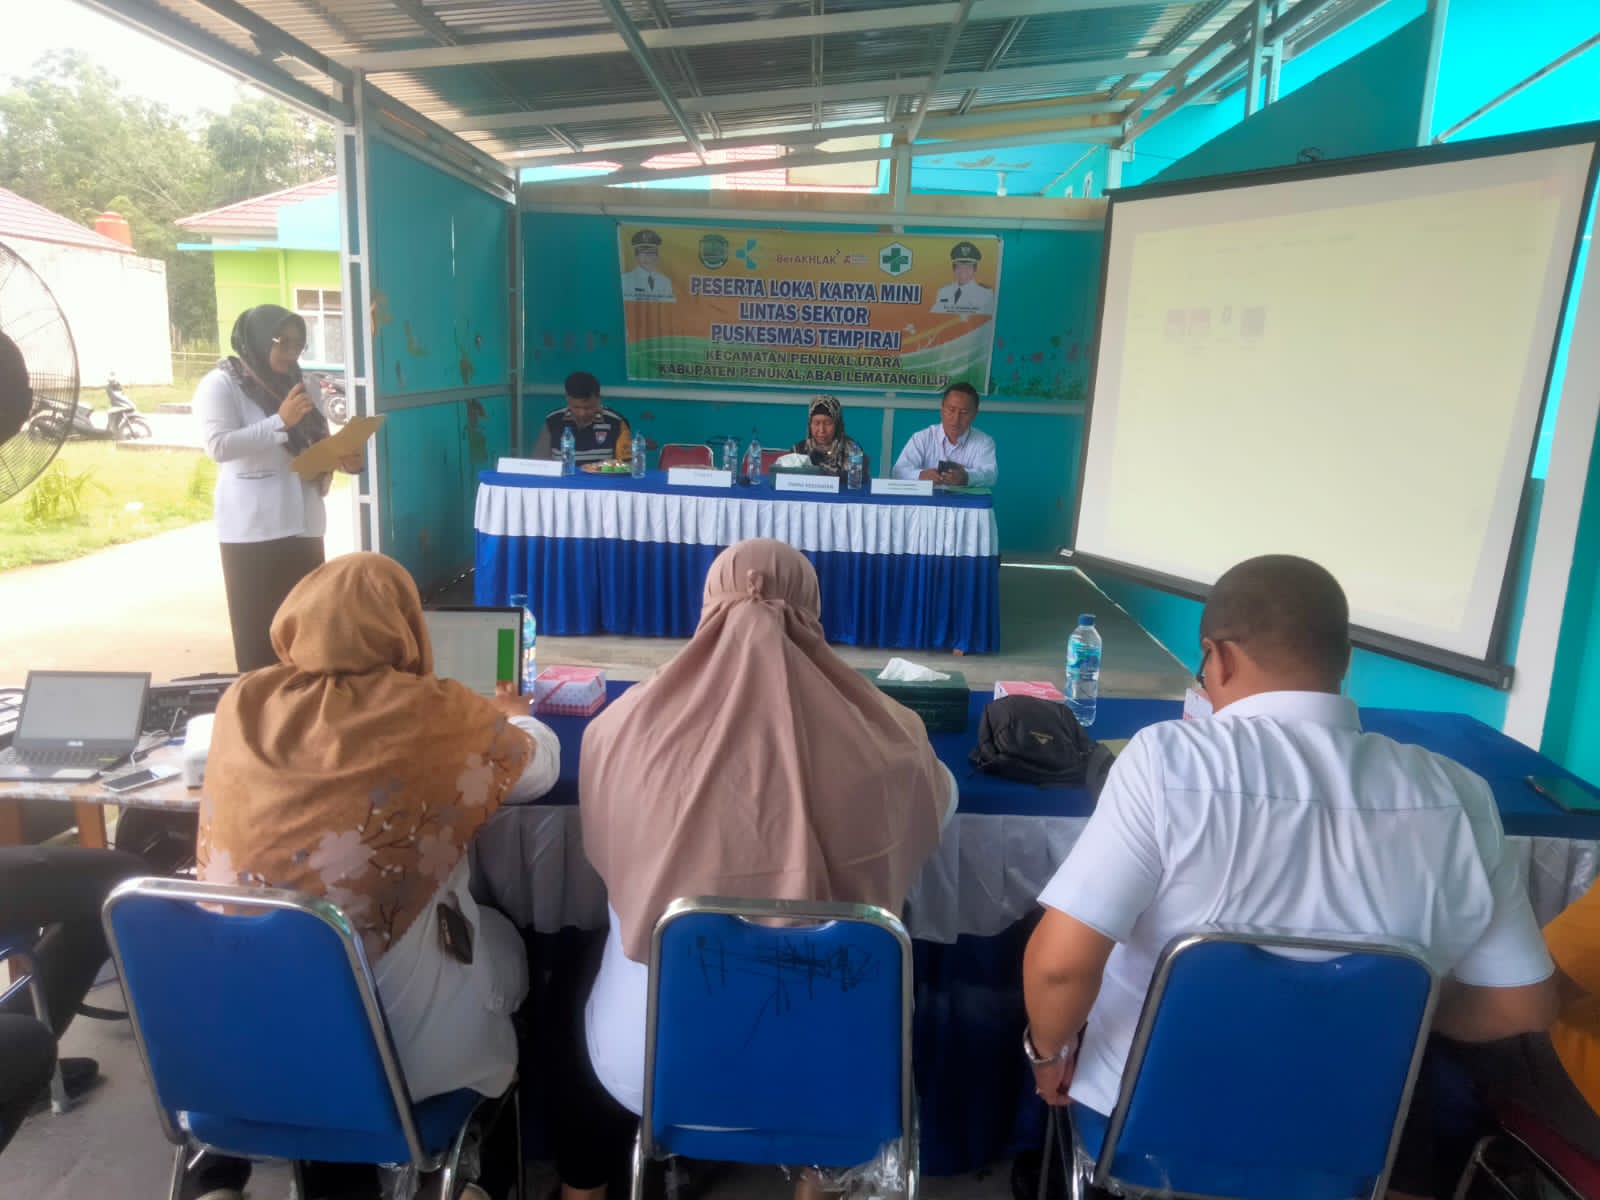 Polsek Penukal Utara Turut Meramaikan Kegiatan Rapat Mini Loka Karya Se-Kecamatan Penukal Utara,